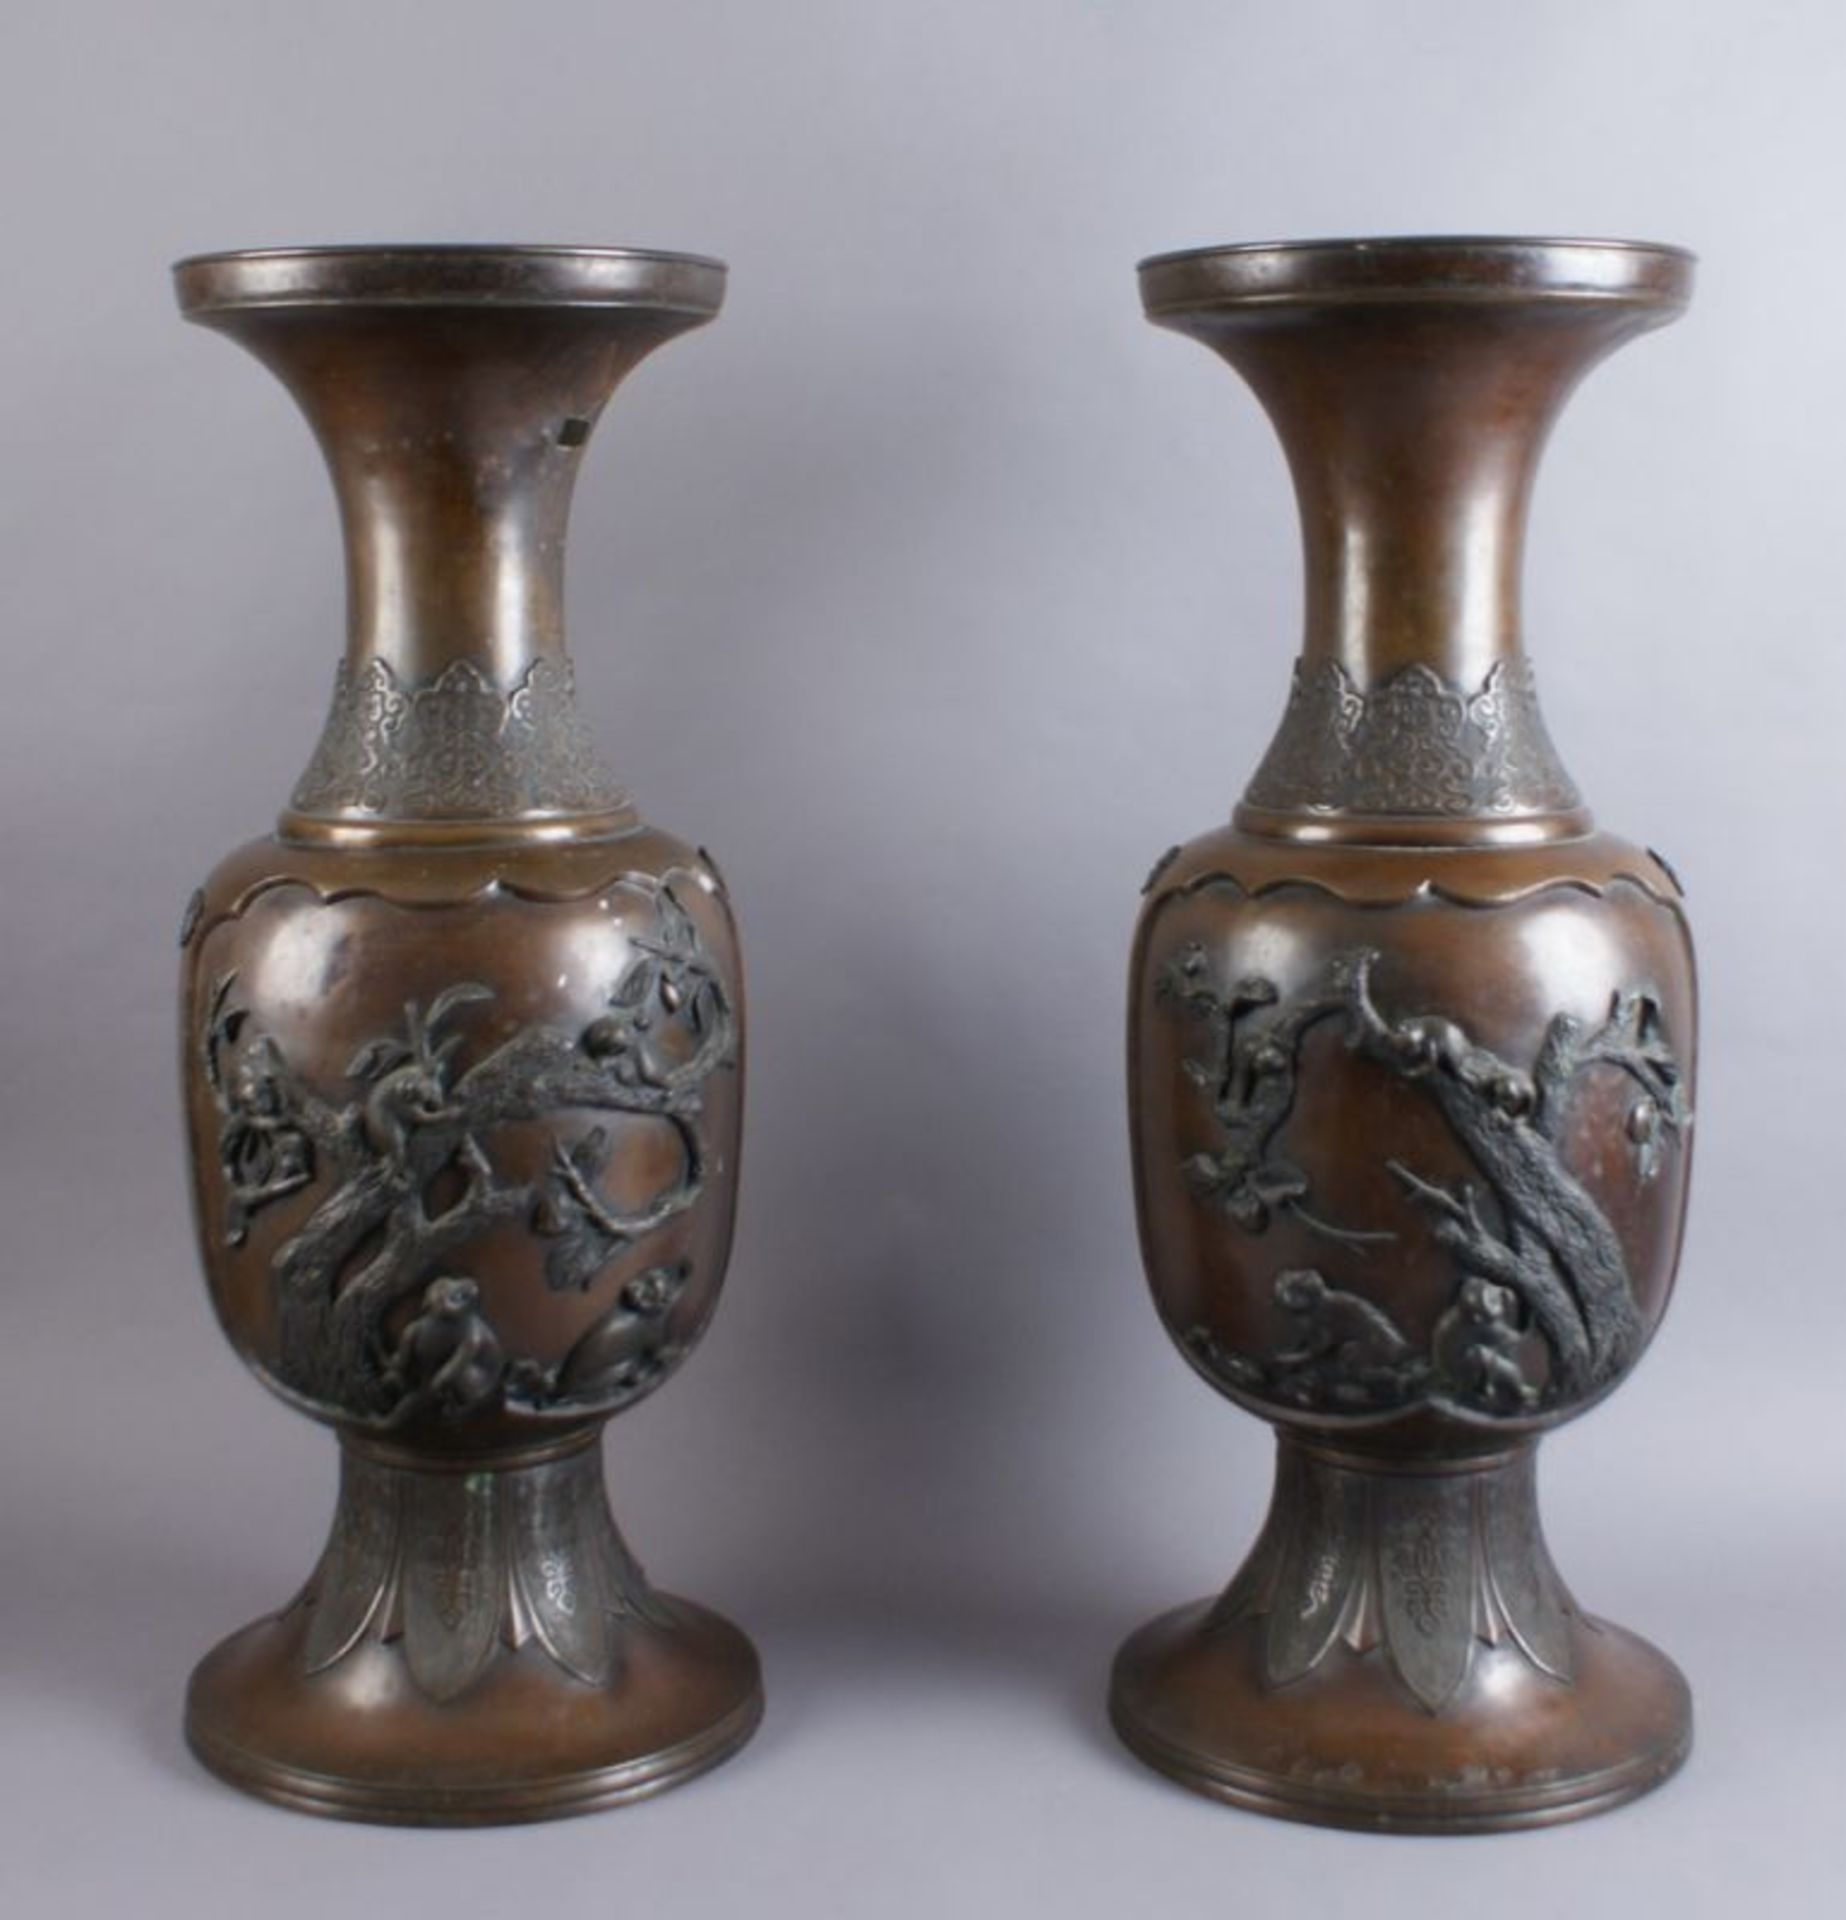 PAAR BRONZE VASEN Japan, 19. JH, zwei grosse Vasen mit Reliefdekor, Darstellung von spielenden Affen